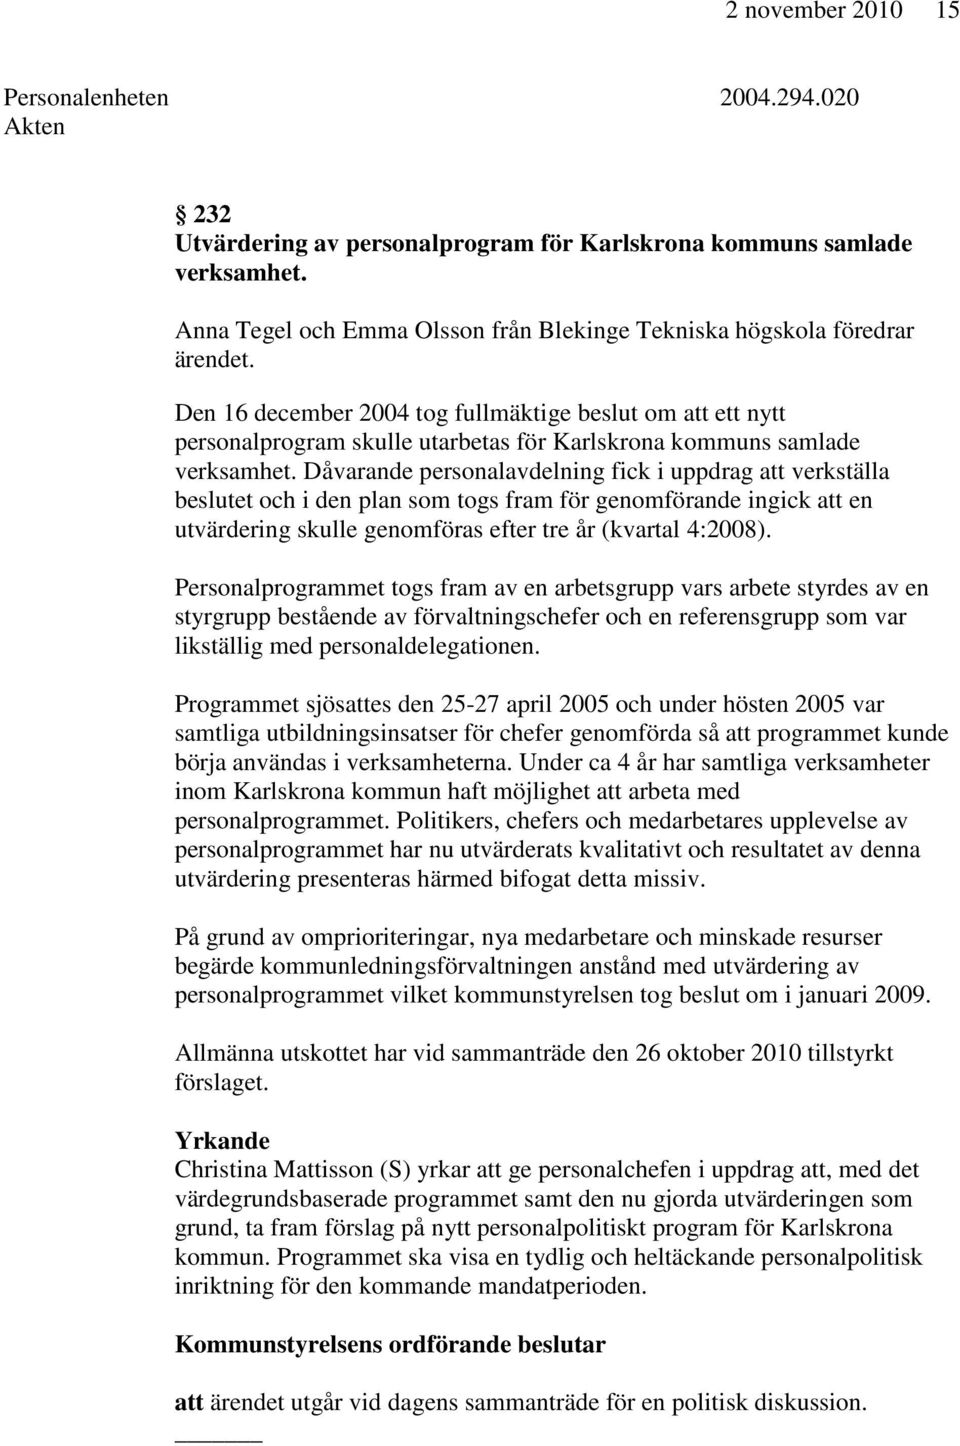 Den 16 december 2004 tog fullmäktige beslut om att ett nytt personalprogram skulle utarbetas för Karlskrona kommuns samlade verksamhet.